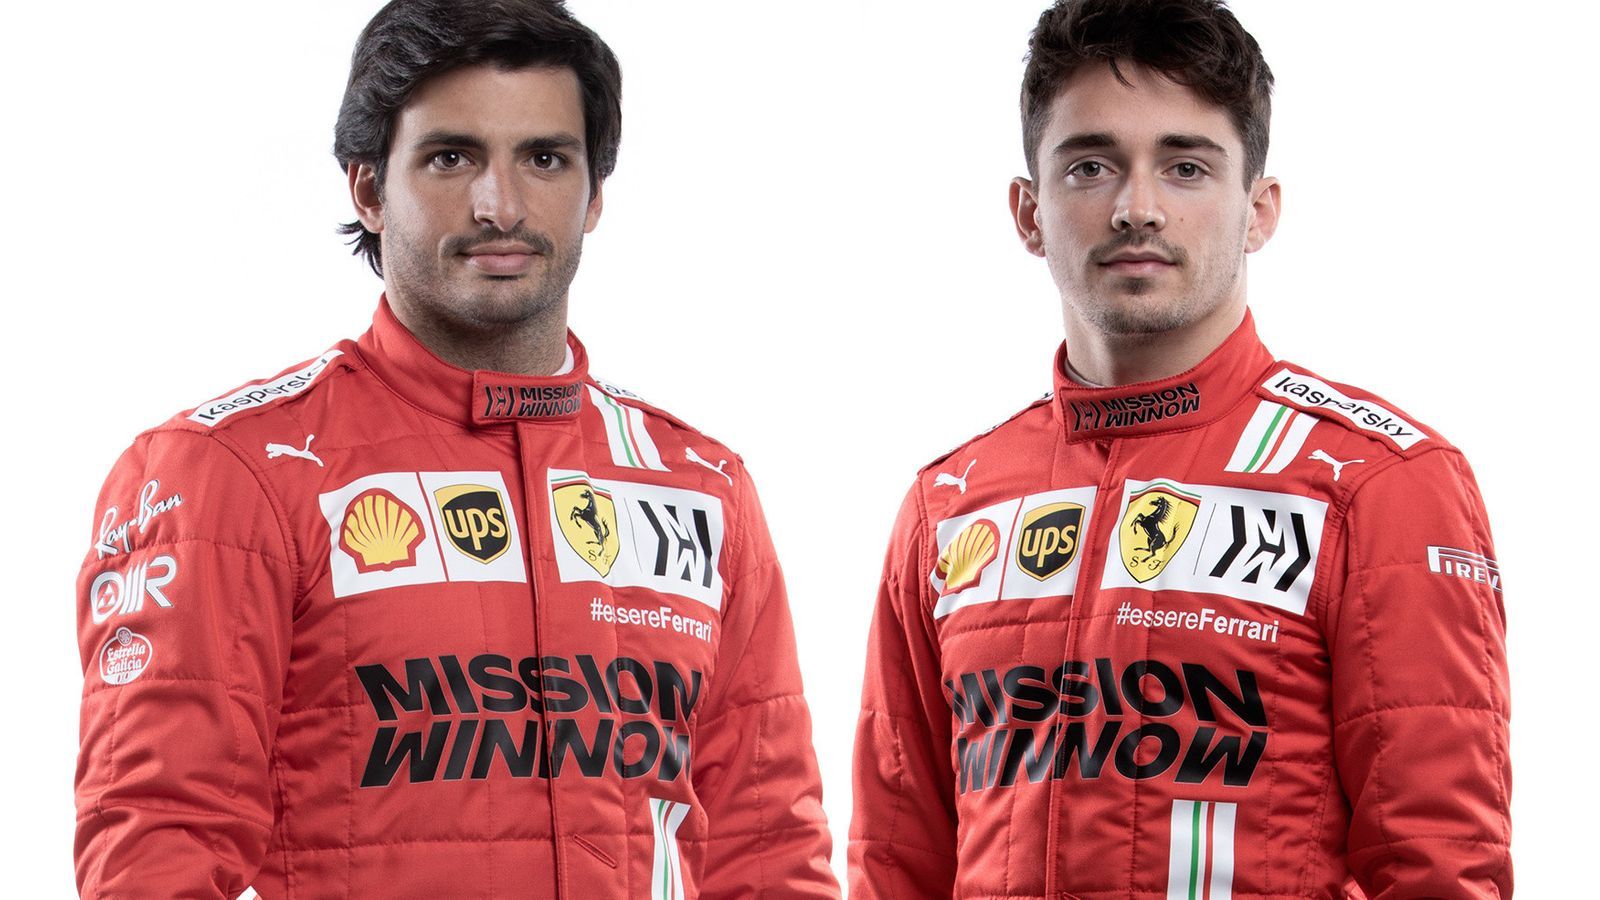 Charles Leclerc vs Carlos Sainz: Ferrari's new pair discuss battle ahead of F1 2021 season